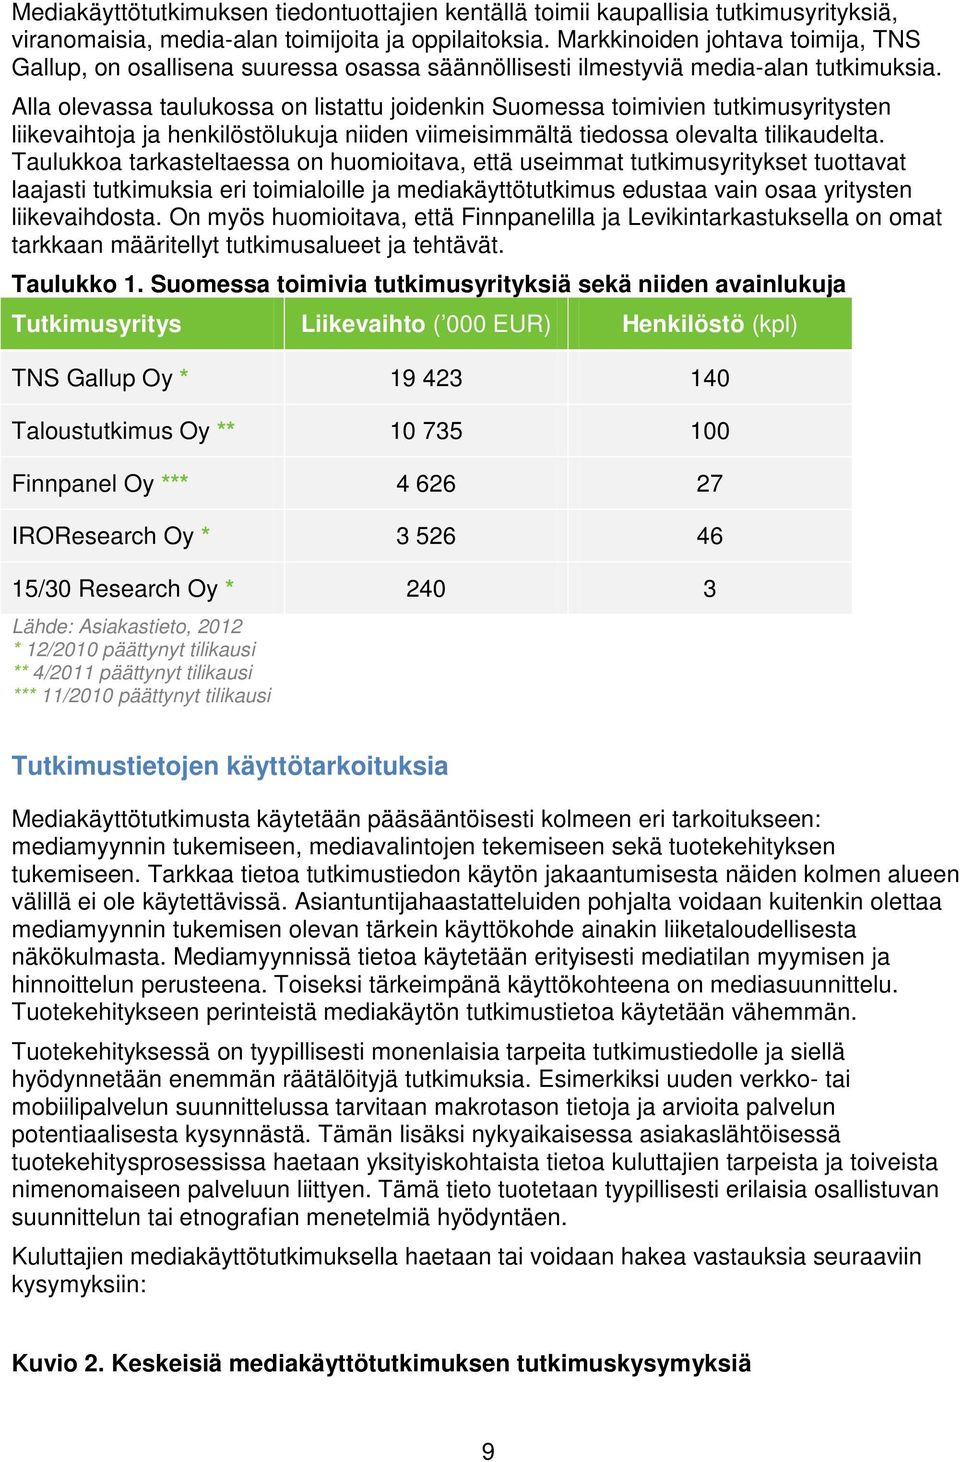 Alla olevassa taulukossa on listattu joidenkin Suomessa toimivien tutkimusyritysten liikevaihtoja ja henkilöstölukuja niiden viimeisimmältä tiedossa olevalta tilikaudelta.